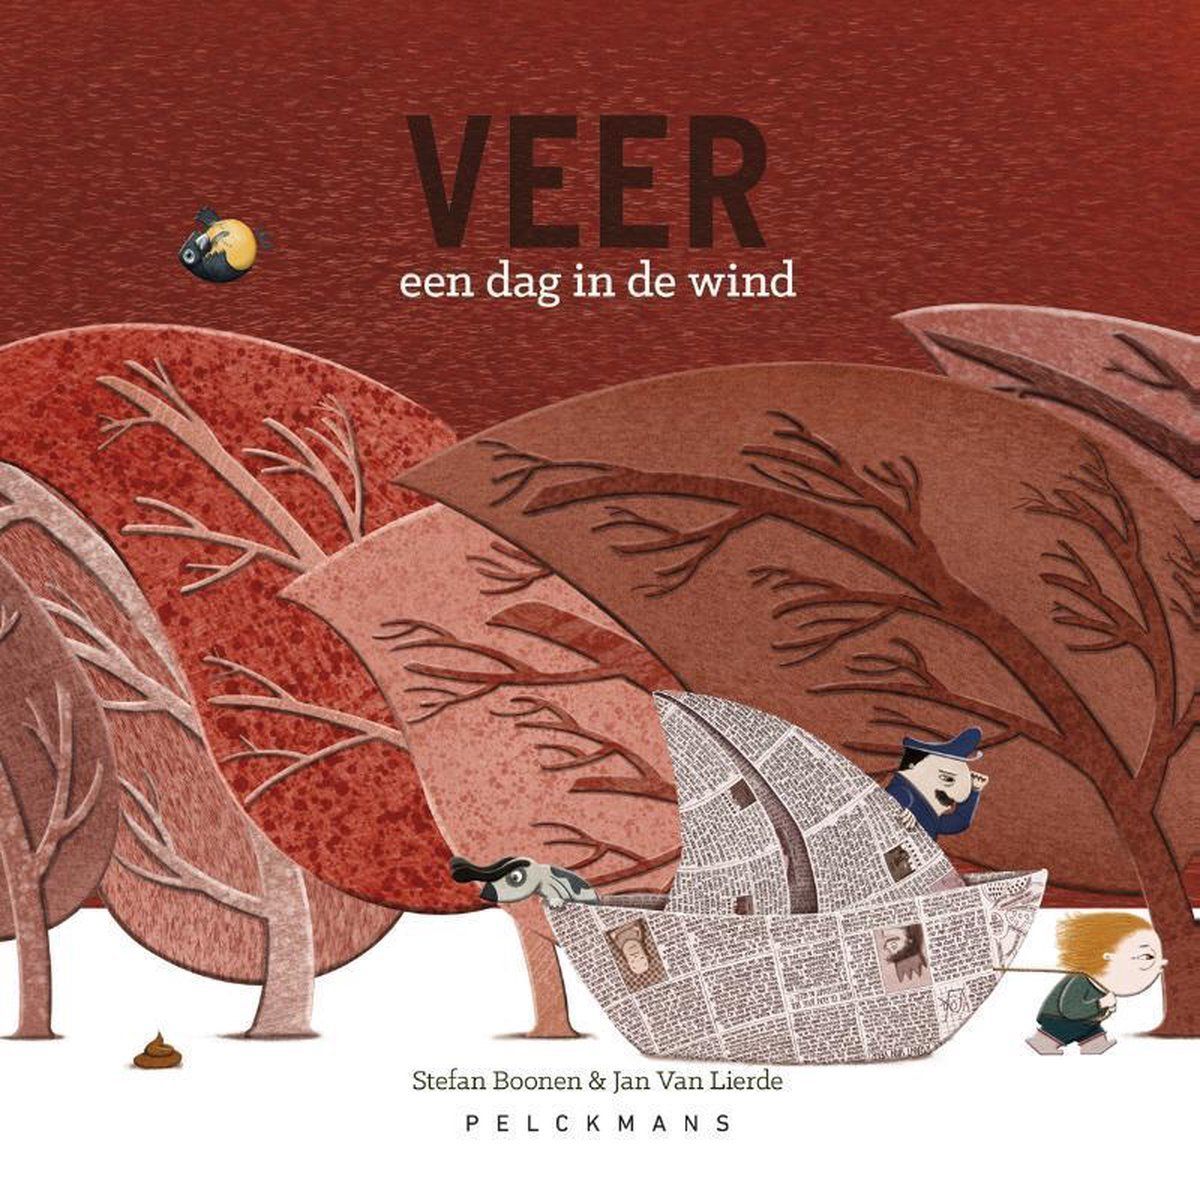 Boekrecensie Veer, een dag in de wind - Stefan Boonen & Jan Van Lierde